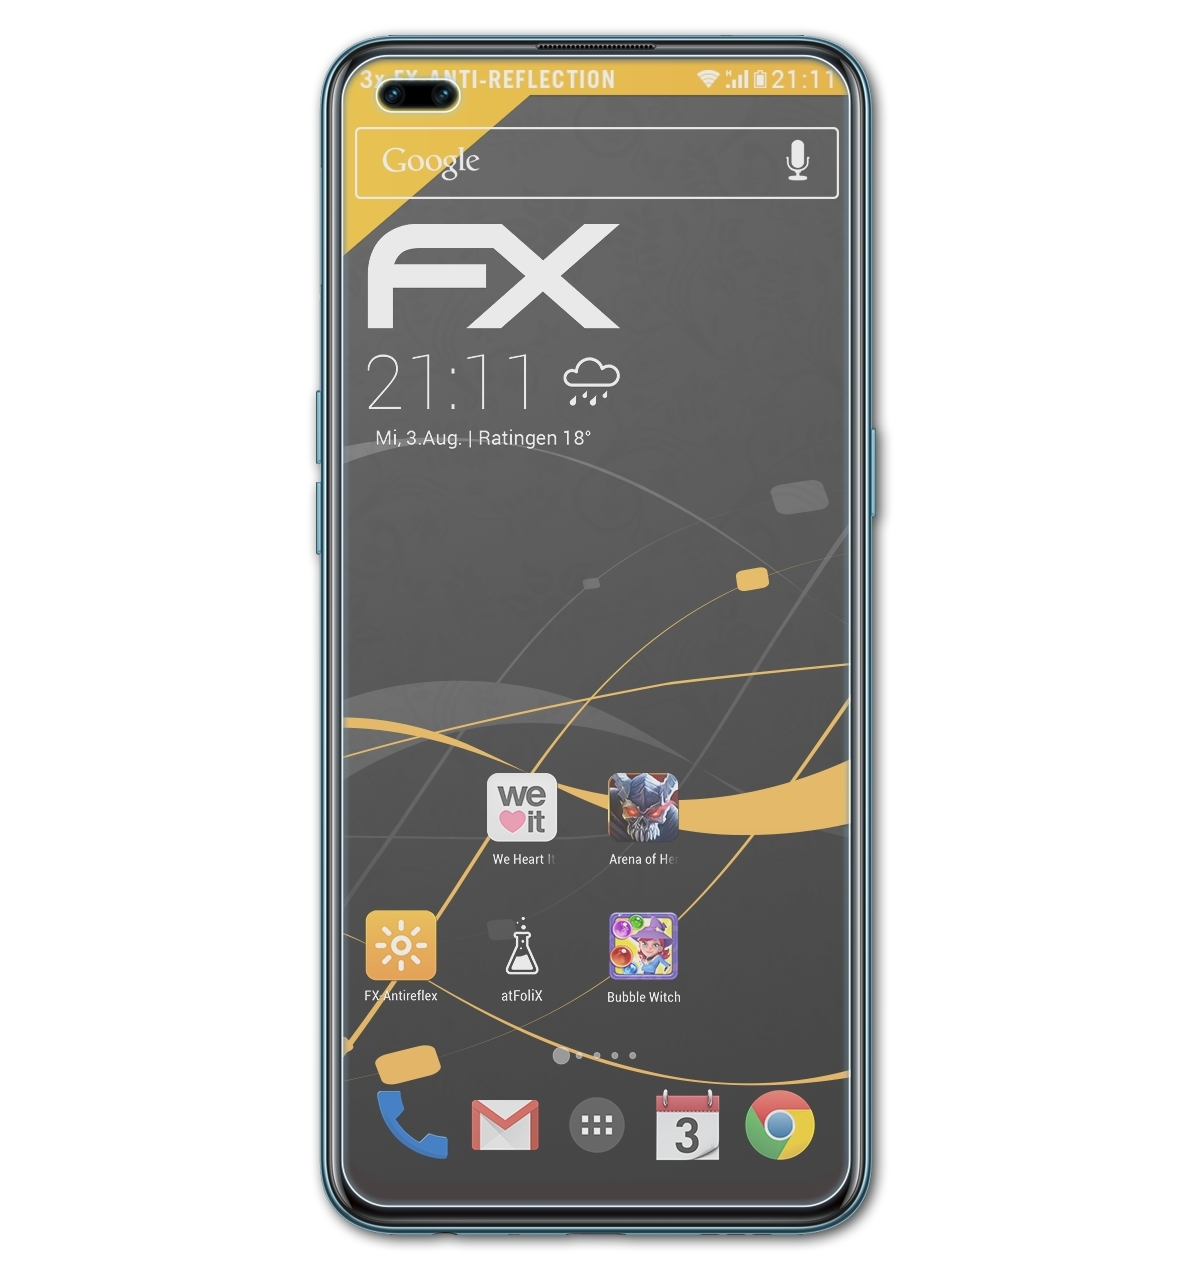 Displayschutz(für Oppo 3x Pro) FX-Antireflex ATFOLIX F17